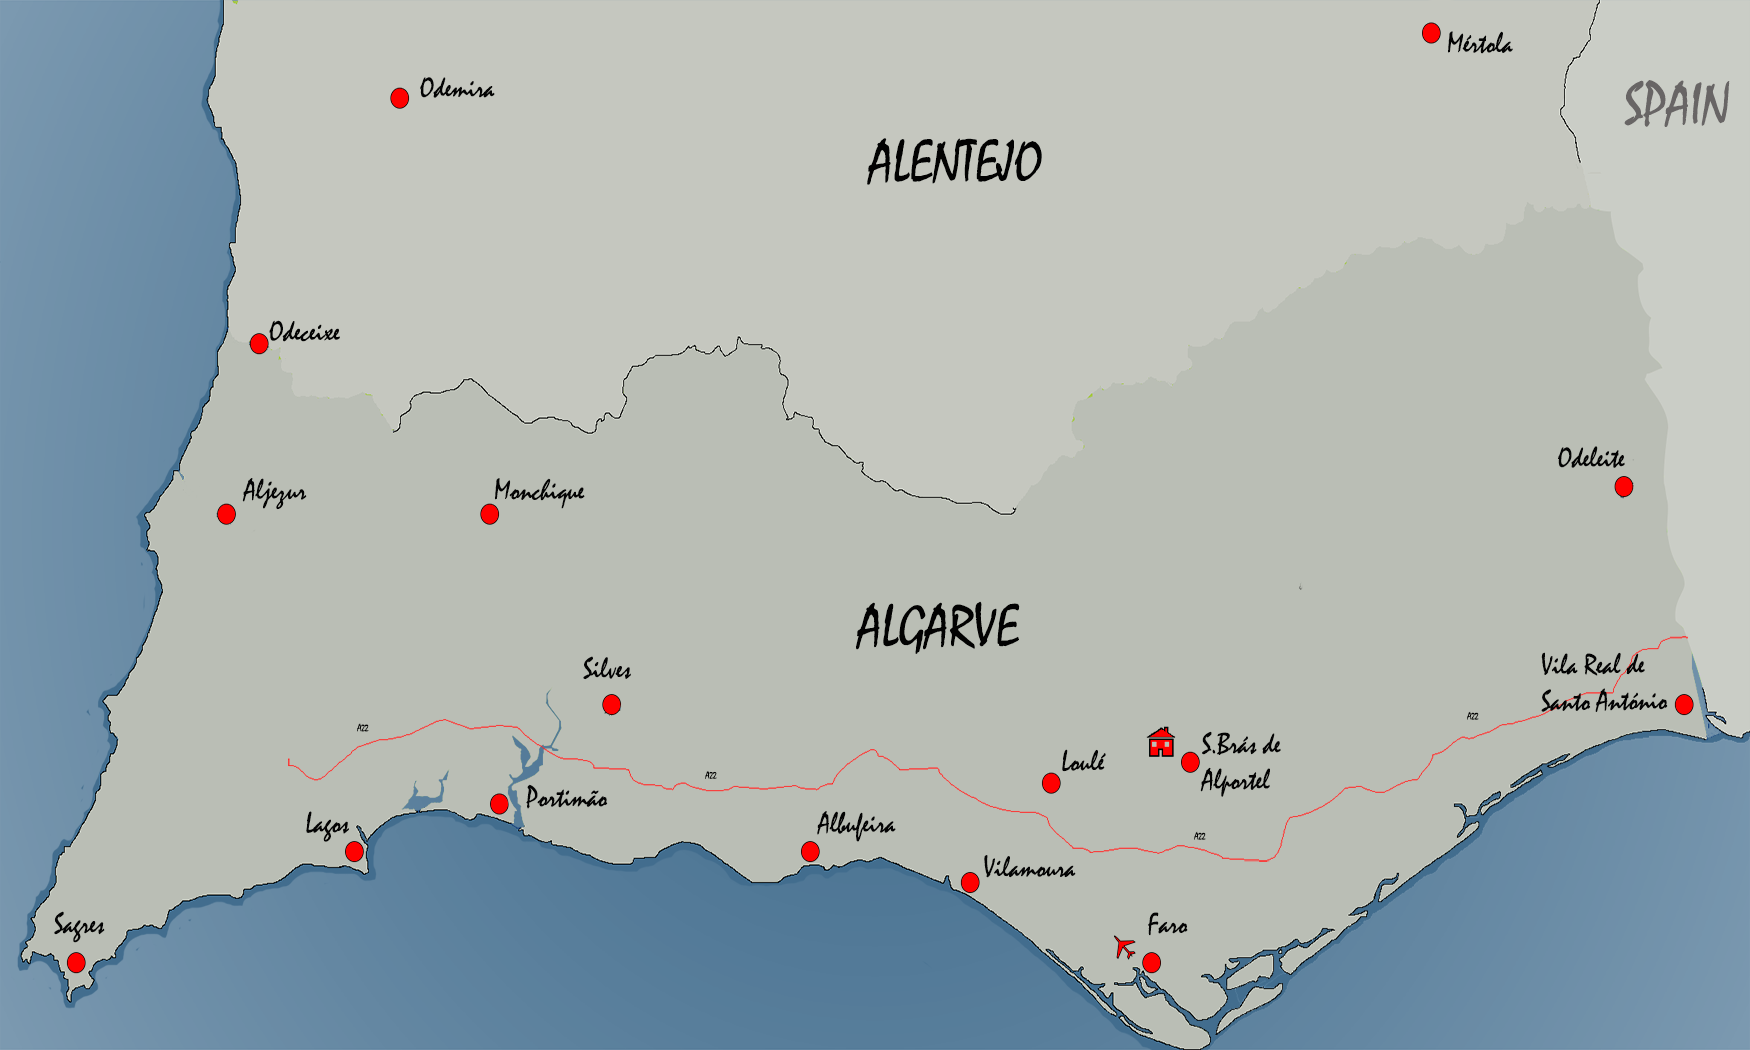 Mapa do Alentejo e Algarve